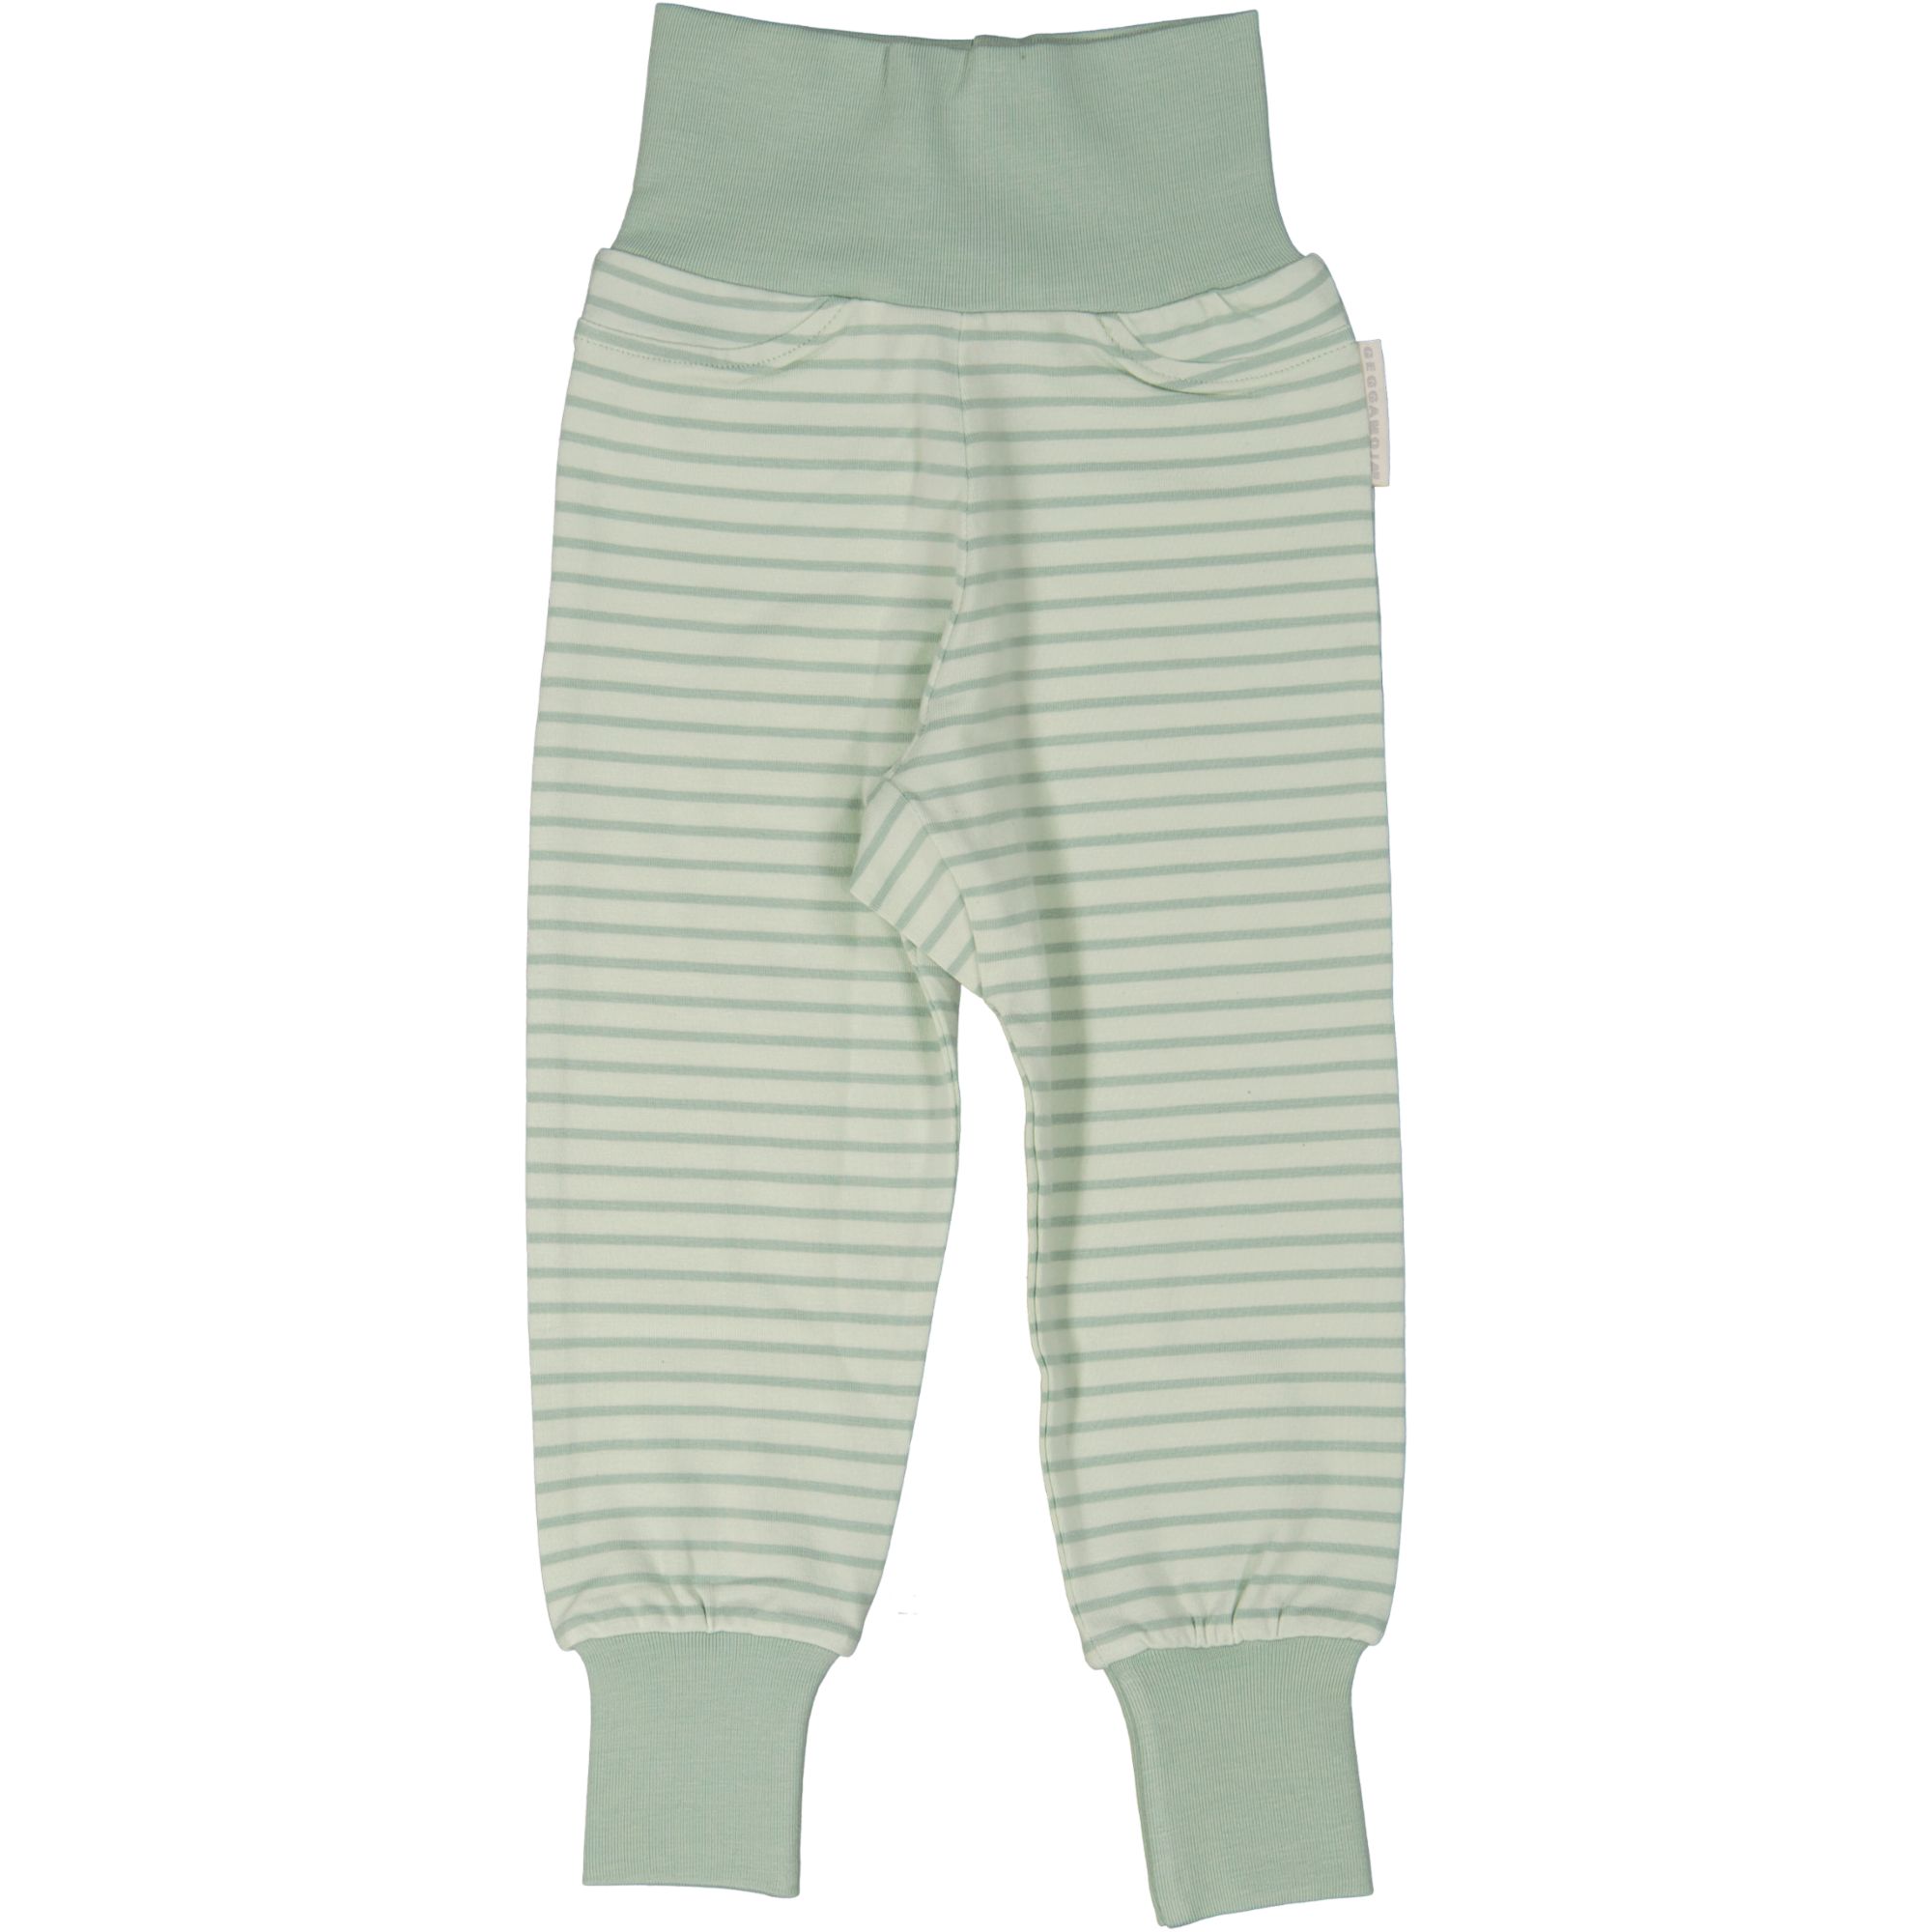 Vauvan housut Classic L.vihreä/vihreä